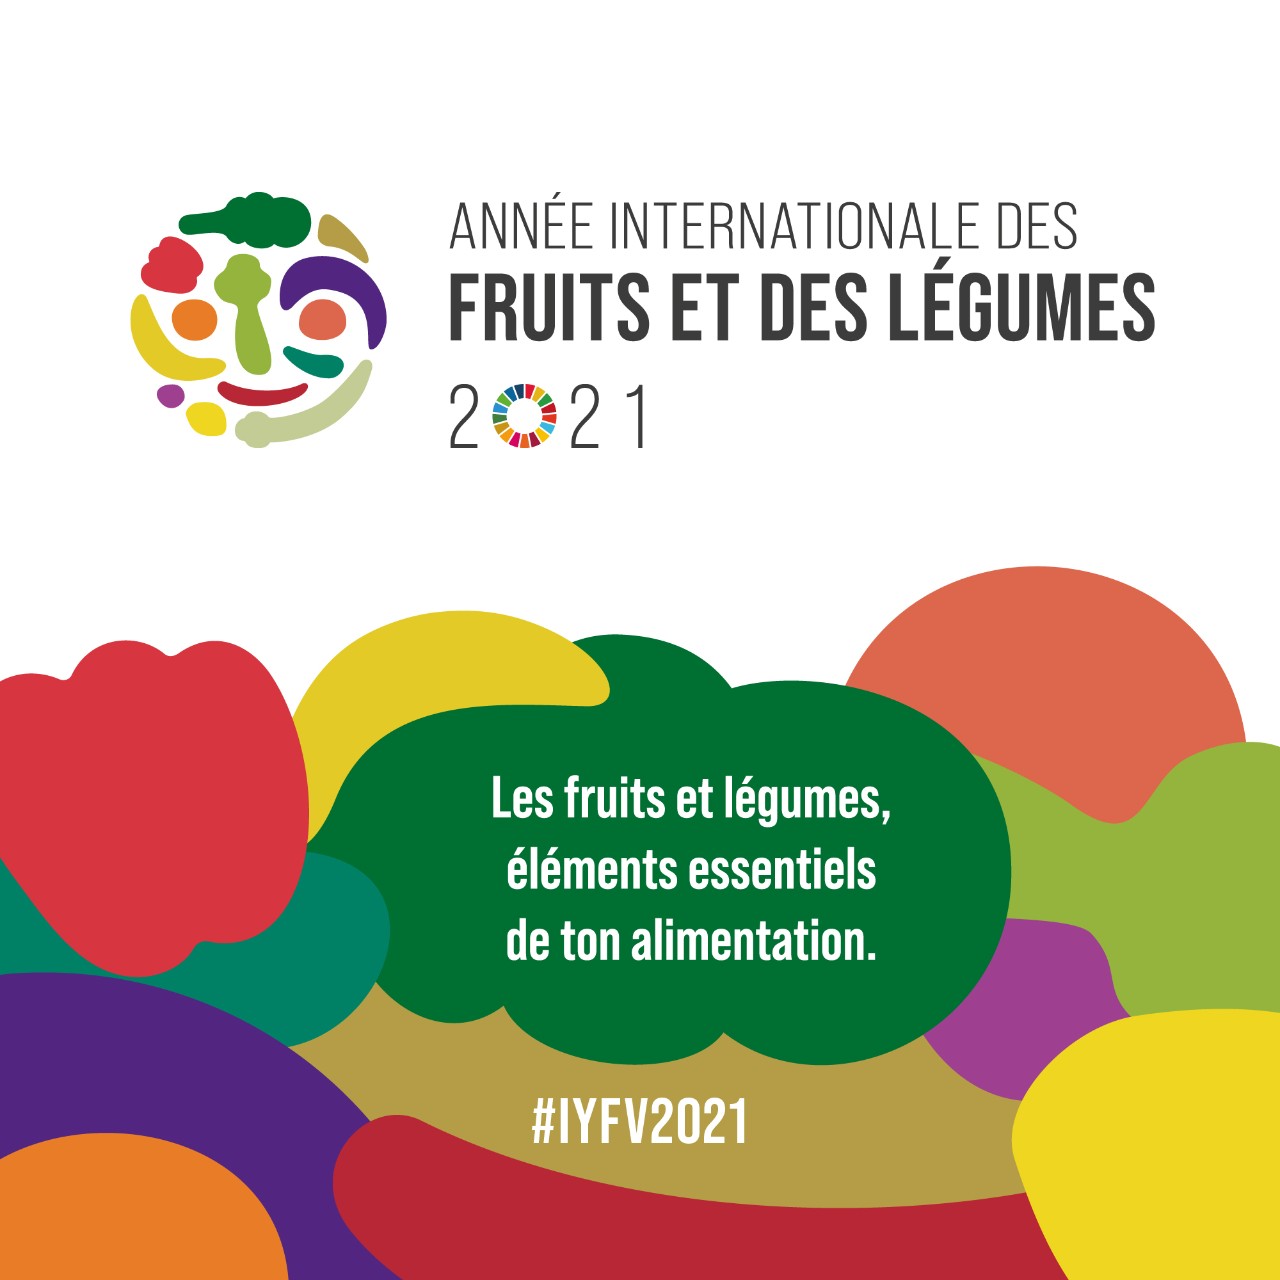 Année internationale des fruits et des légumes 2021. les fruits et légumes, éléments essentiels de ton alimentation. #IYFV2021